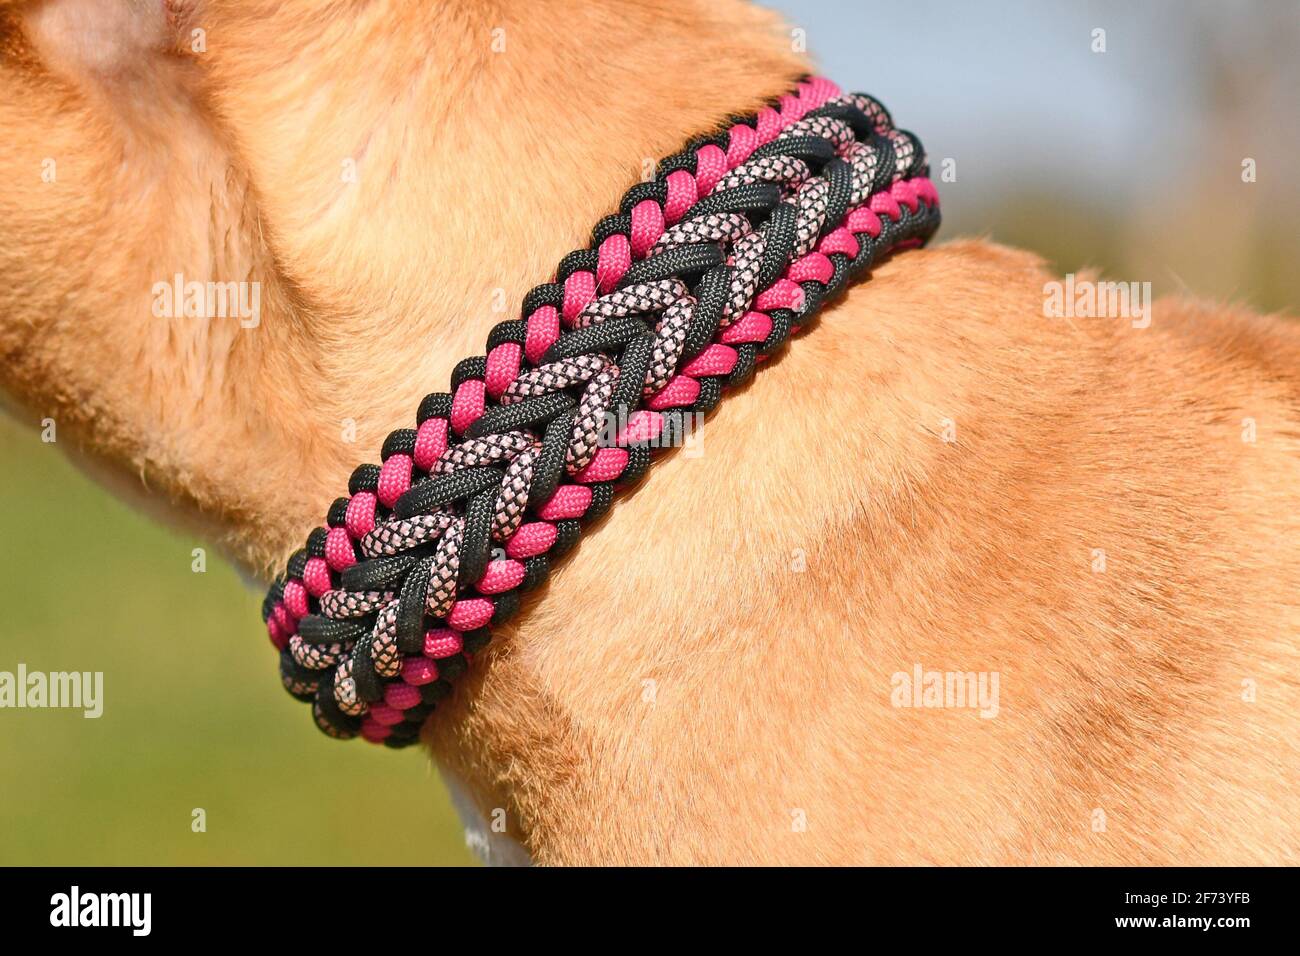 Nahaufnahme eines handgefertigten gewebten Hundehalsragens aus Paracord  Material am Hals des roten Hundes Stockfotografie - Alamy